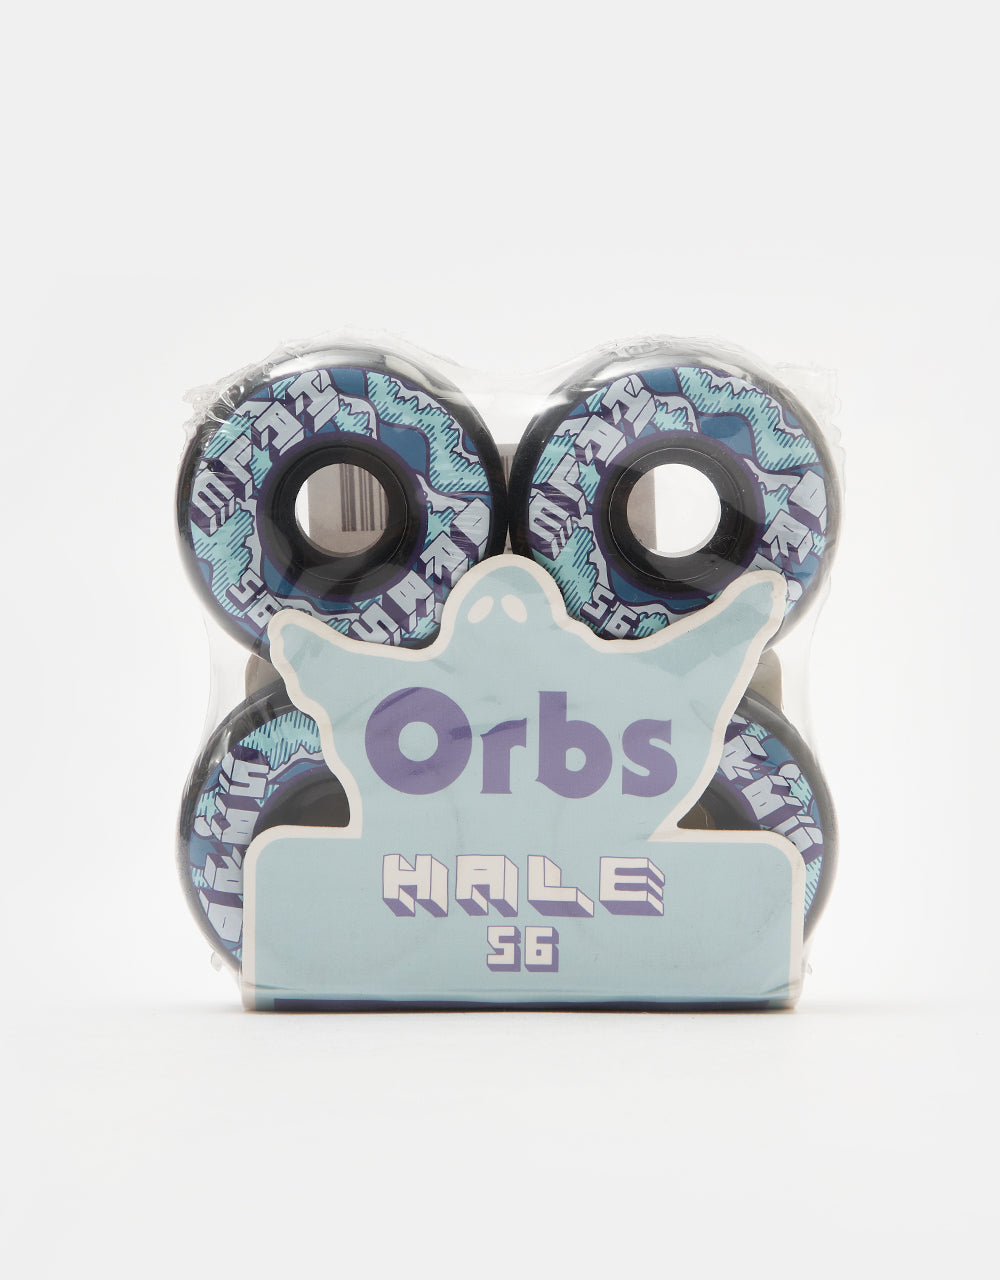 Orbs Hale Specters Conical 99a Skateboard Wheels - 56mm